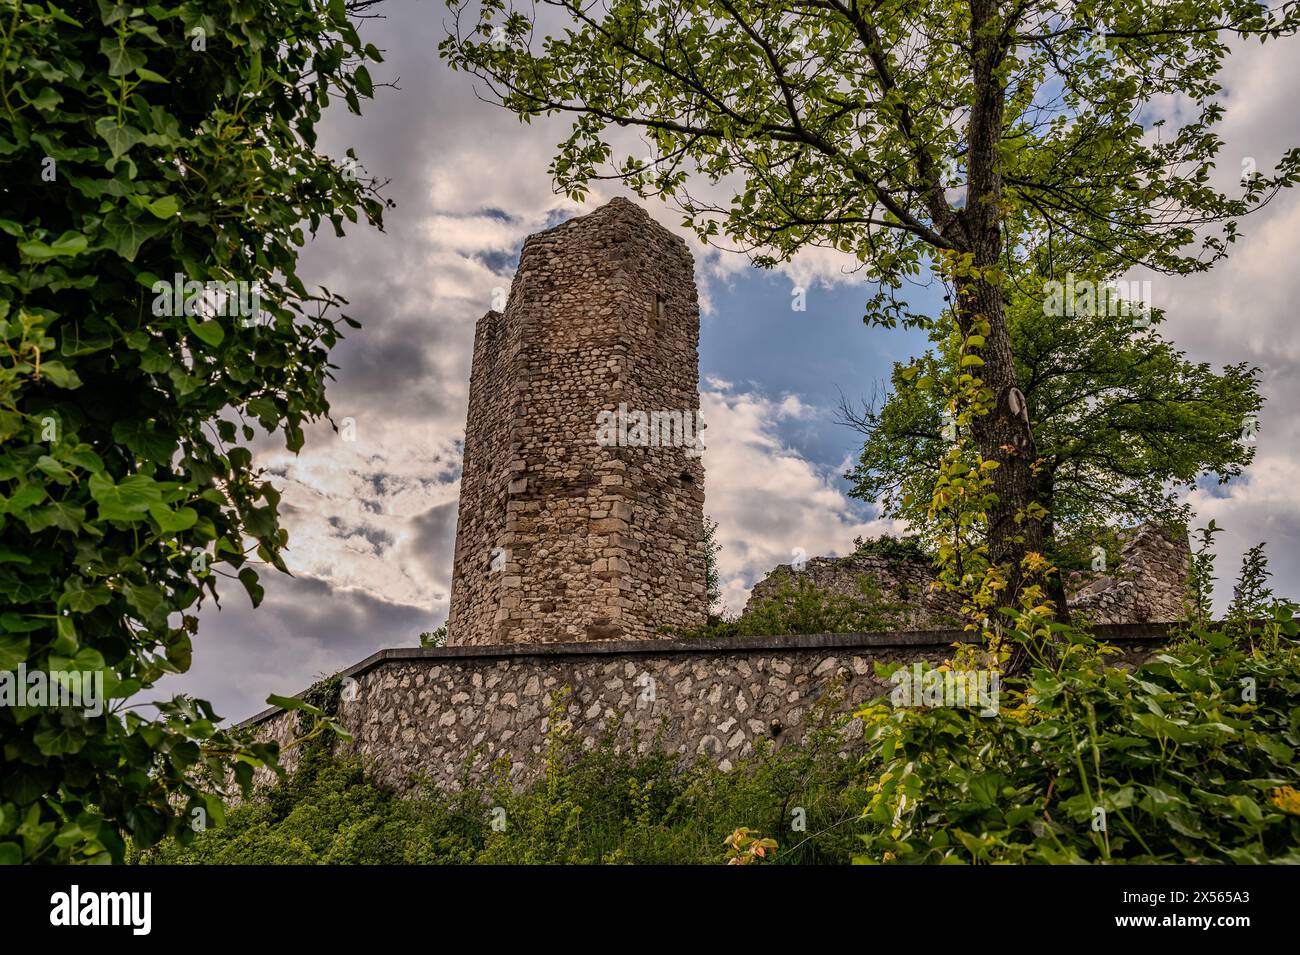 Die Burg von Alfedena ist die Ruine einer Burg aus dem 10. Bis 11. Jahrhundert in der italienischen Gemeinde mit dem gleichen Namen, von der eine Oktagona stammt Stockfoto